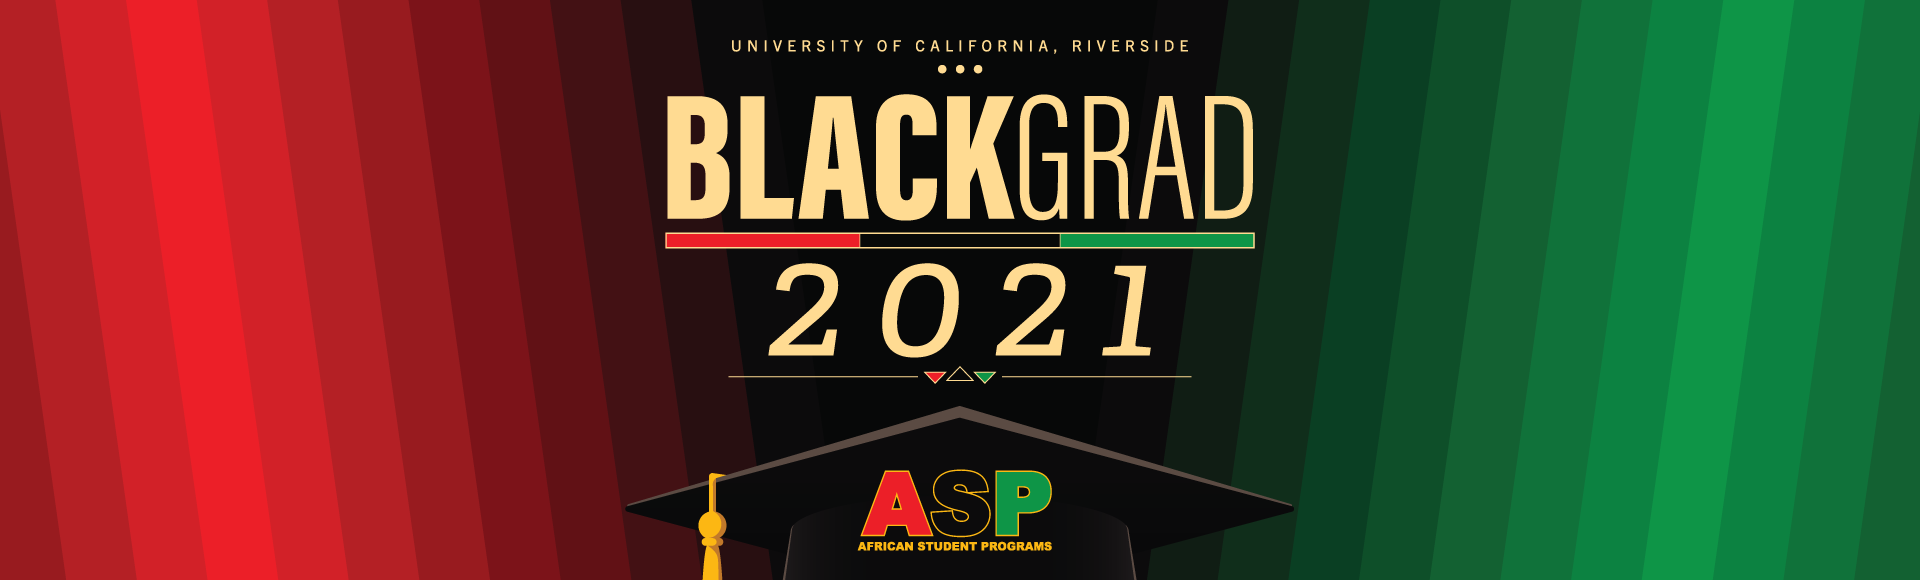 ASP Black Grad 2021